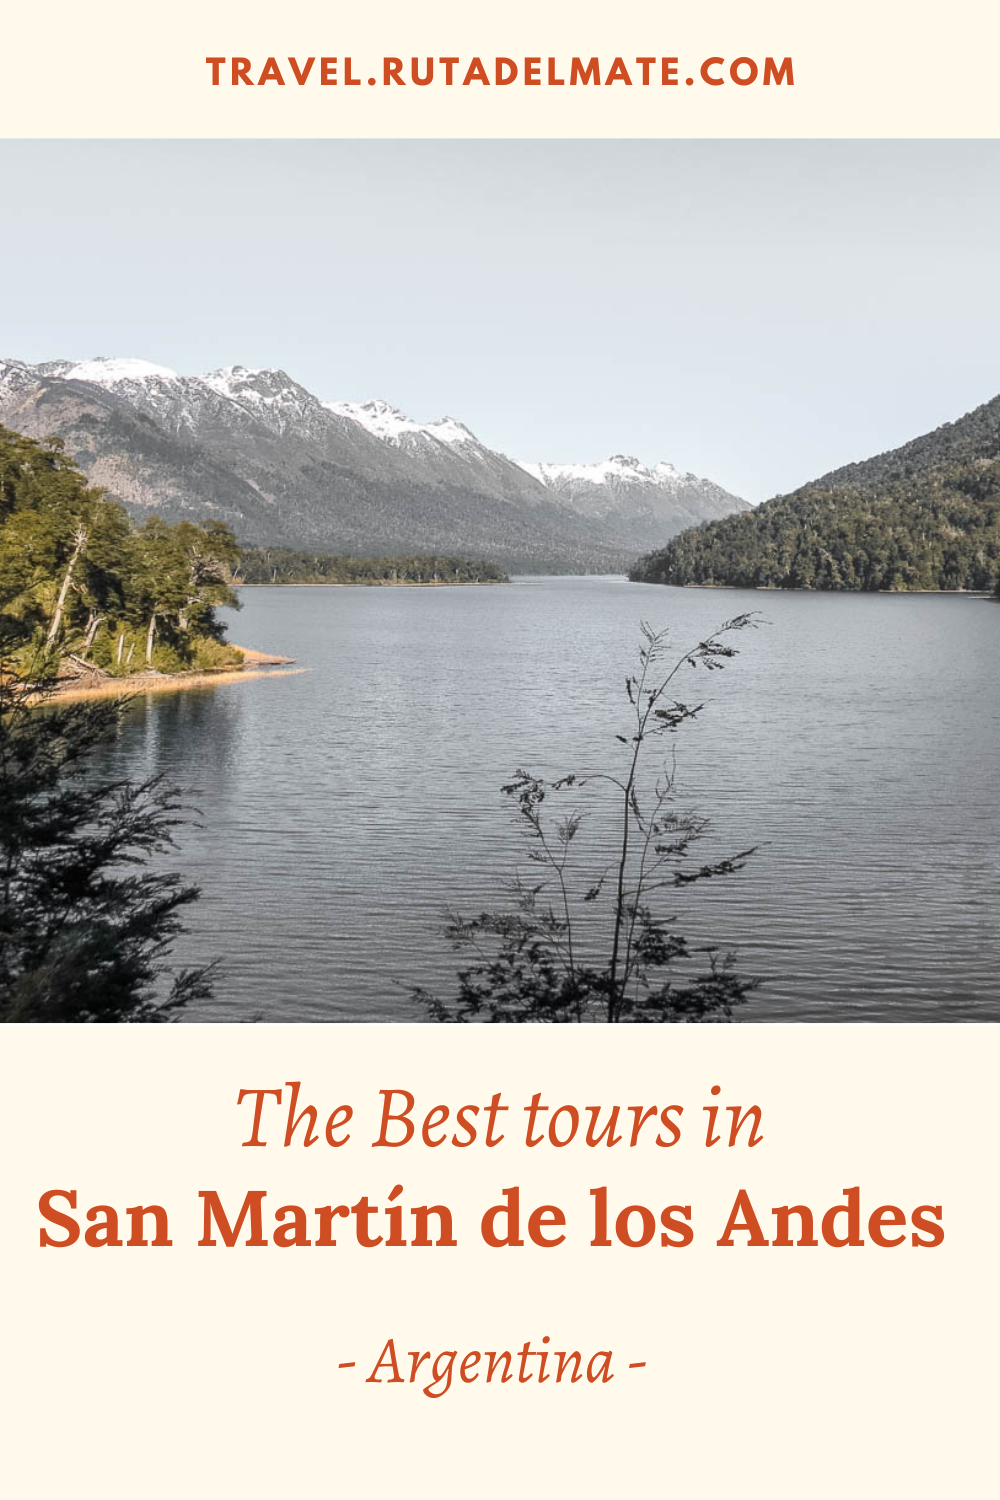 Tours in San Martín de los Andes